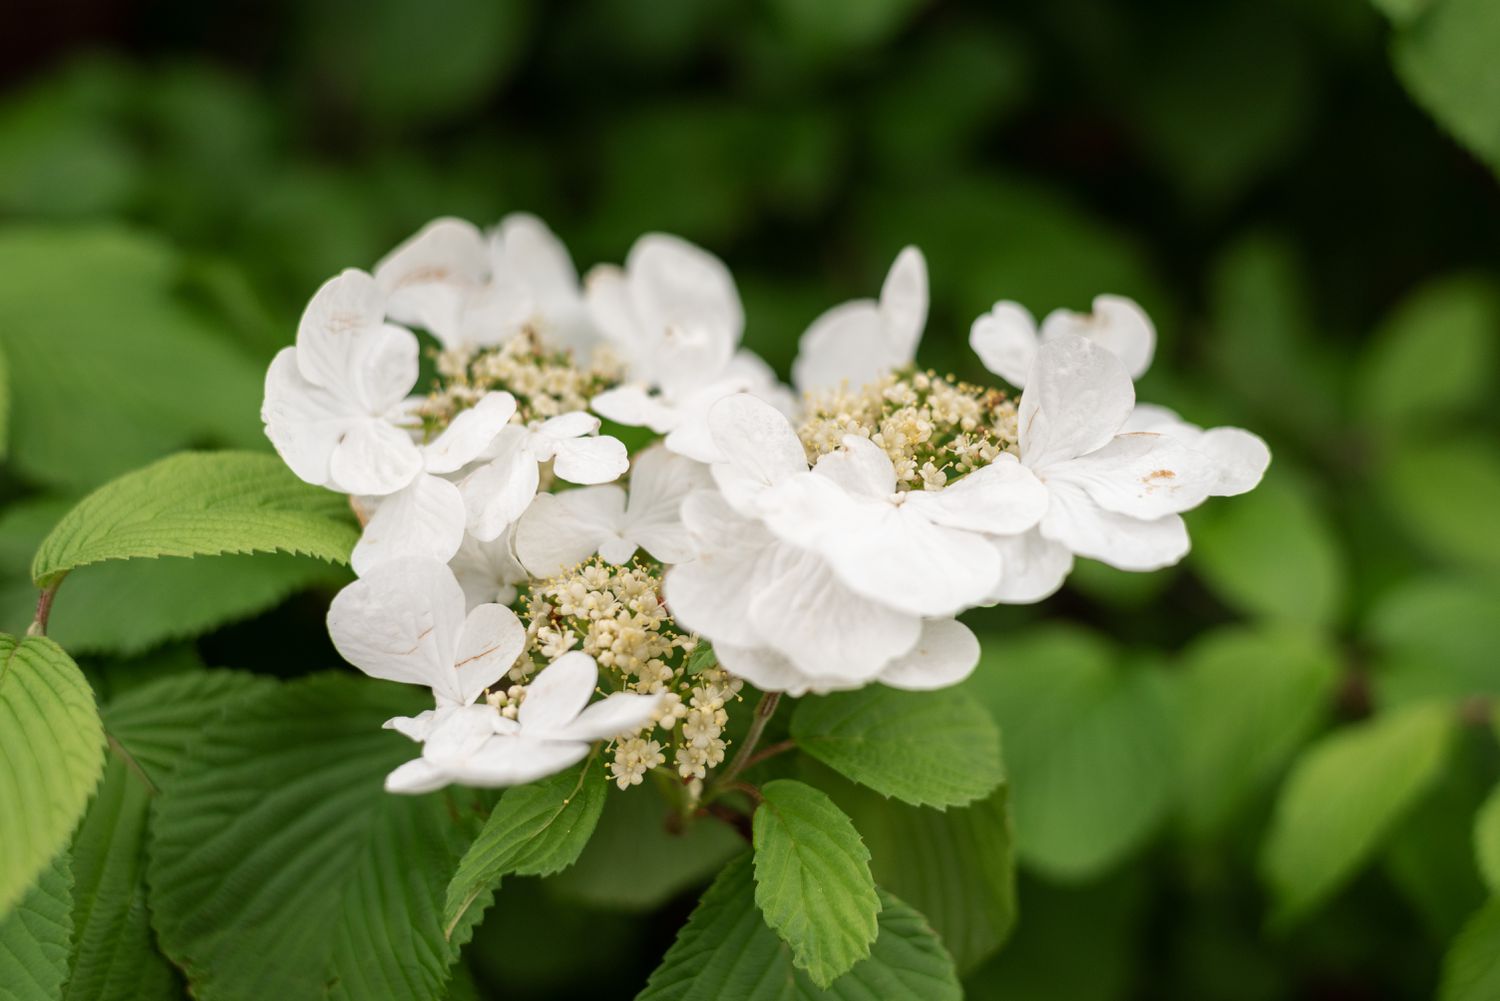 Hortênsia trepadeira com pequenos cachos de flores brancas em folhas com nervuras